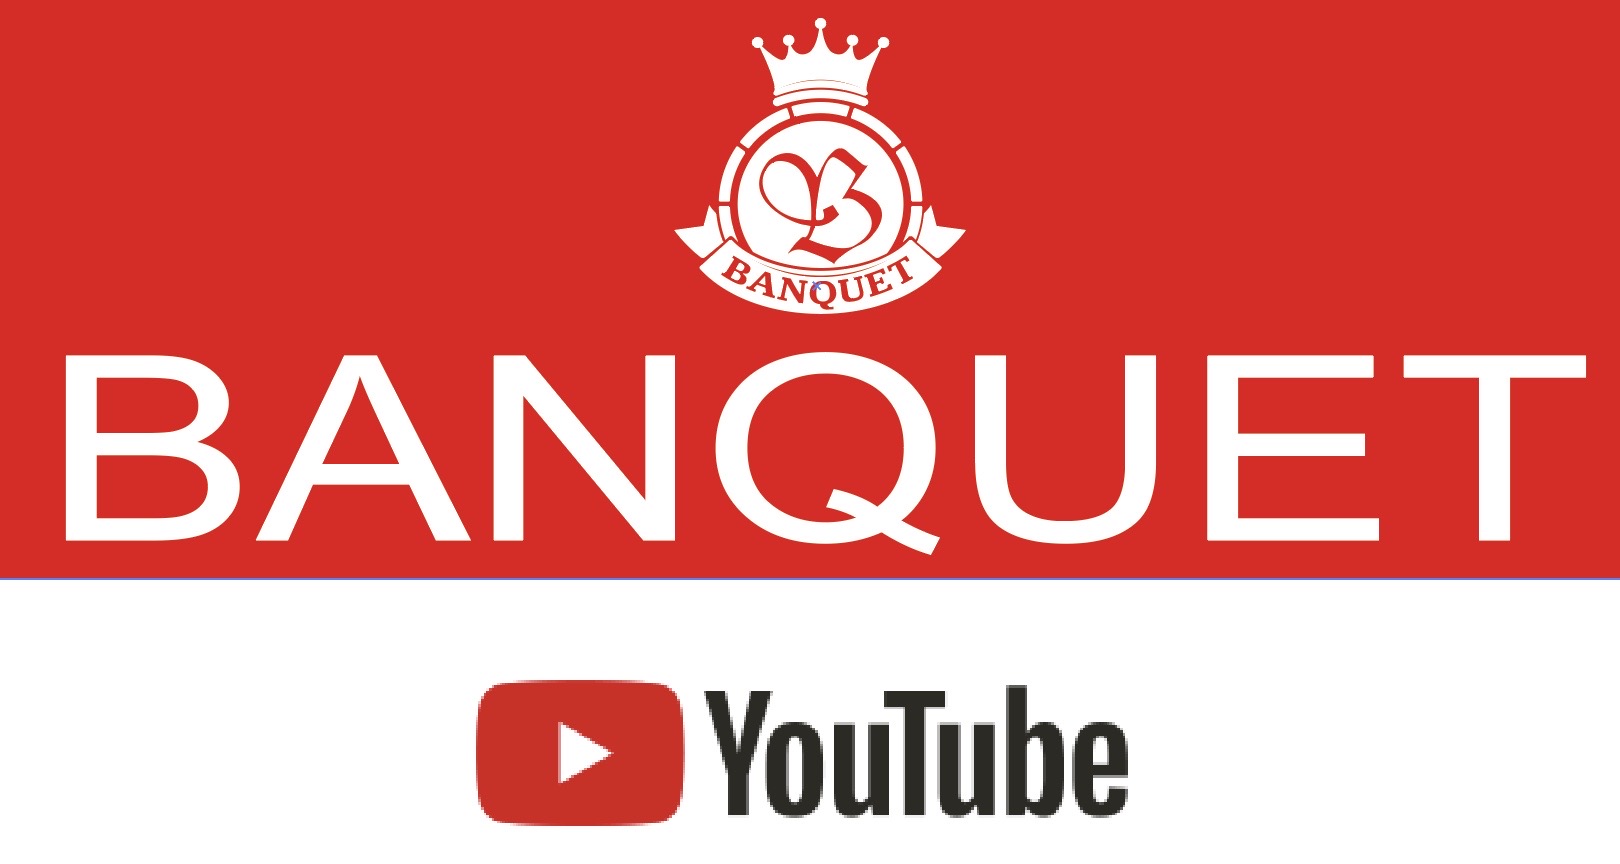 BANQUETチャンネル